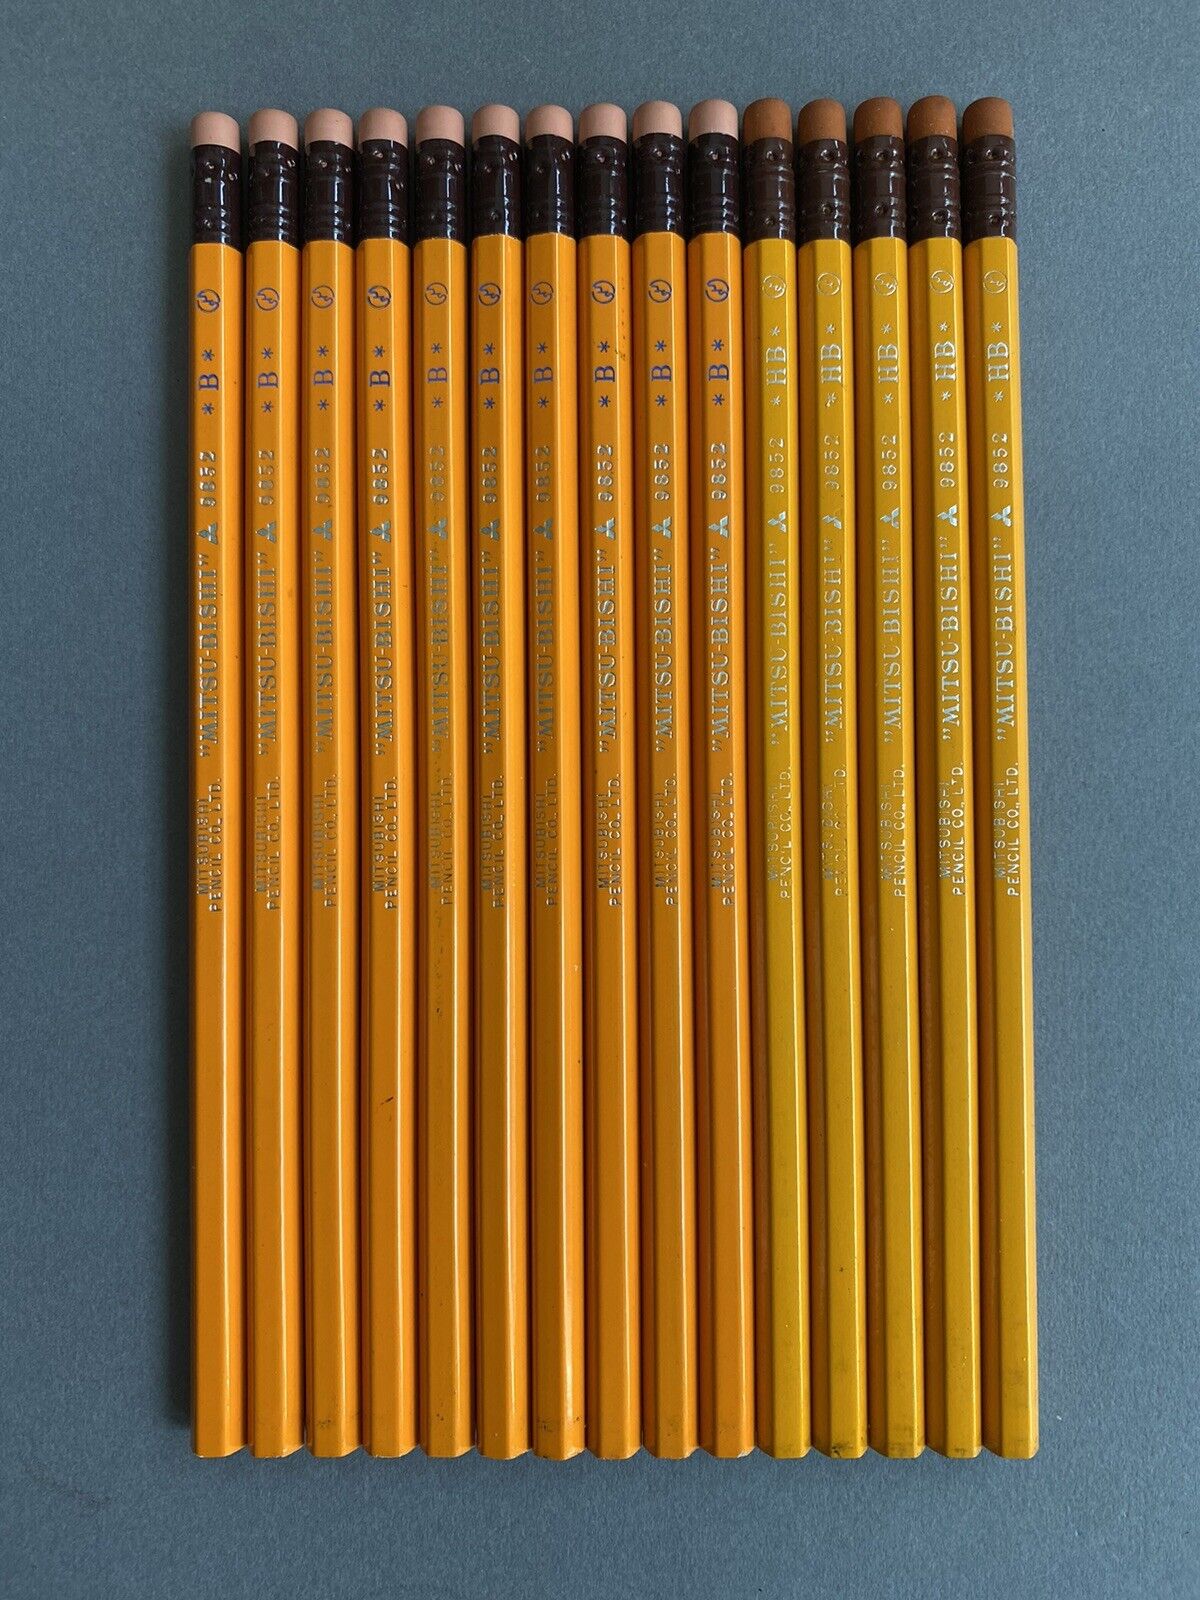 15 DIFFERENT Japanese Vintage Pencil Mitsubishi 9852 B HB NOS JIS